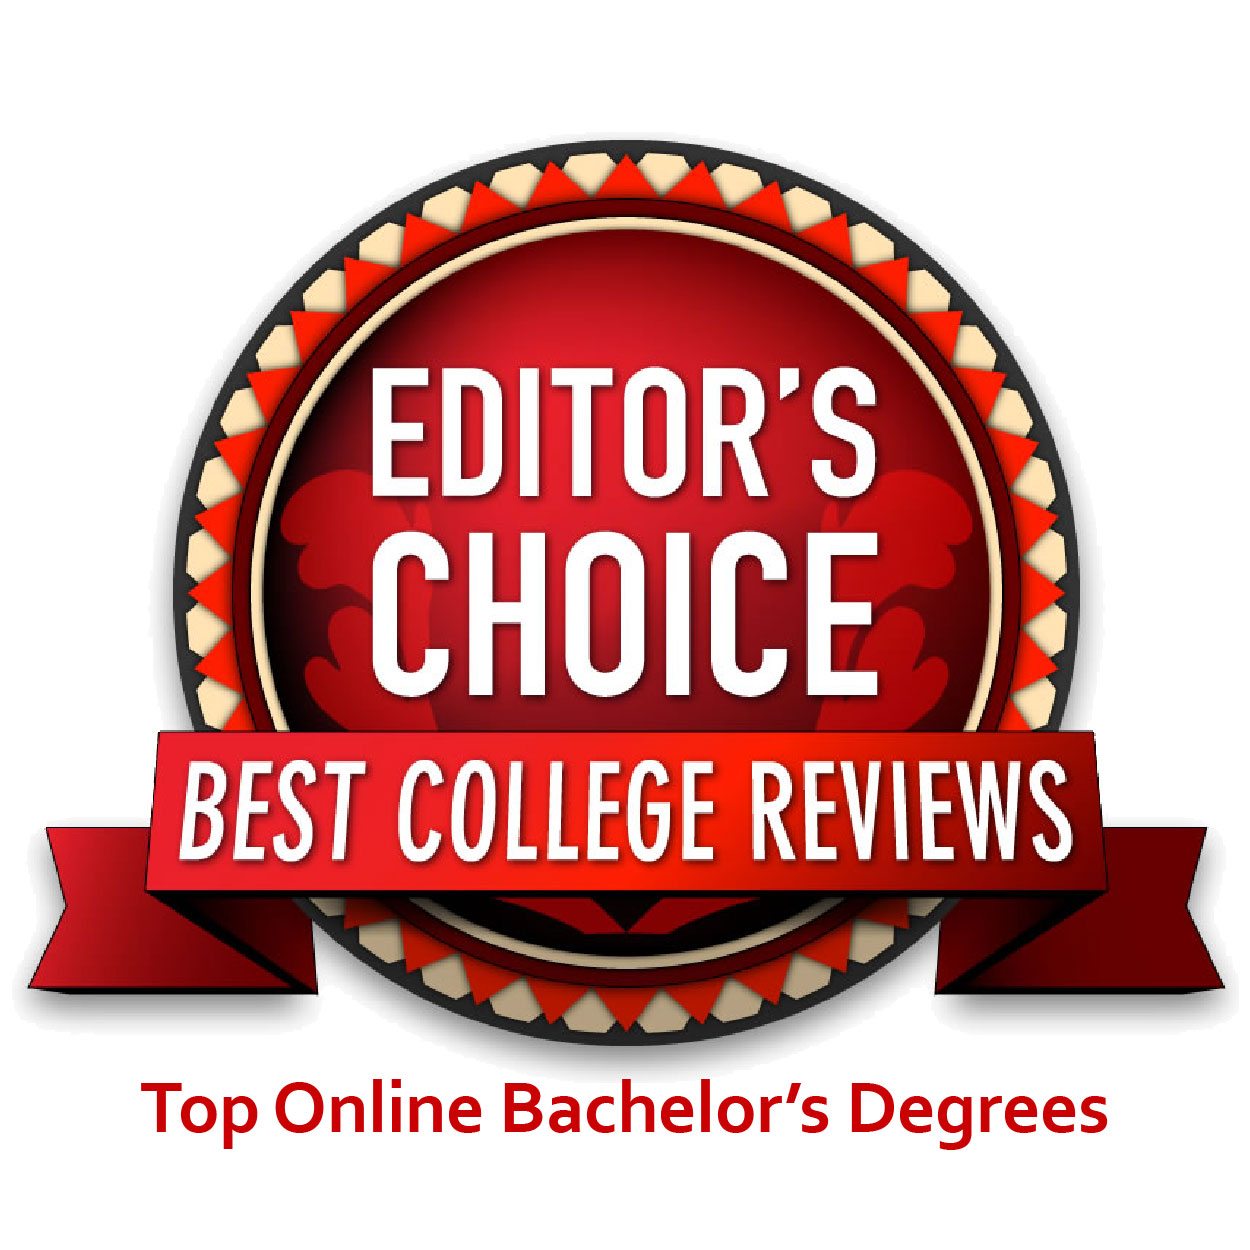 Best online bachelor's degrees